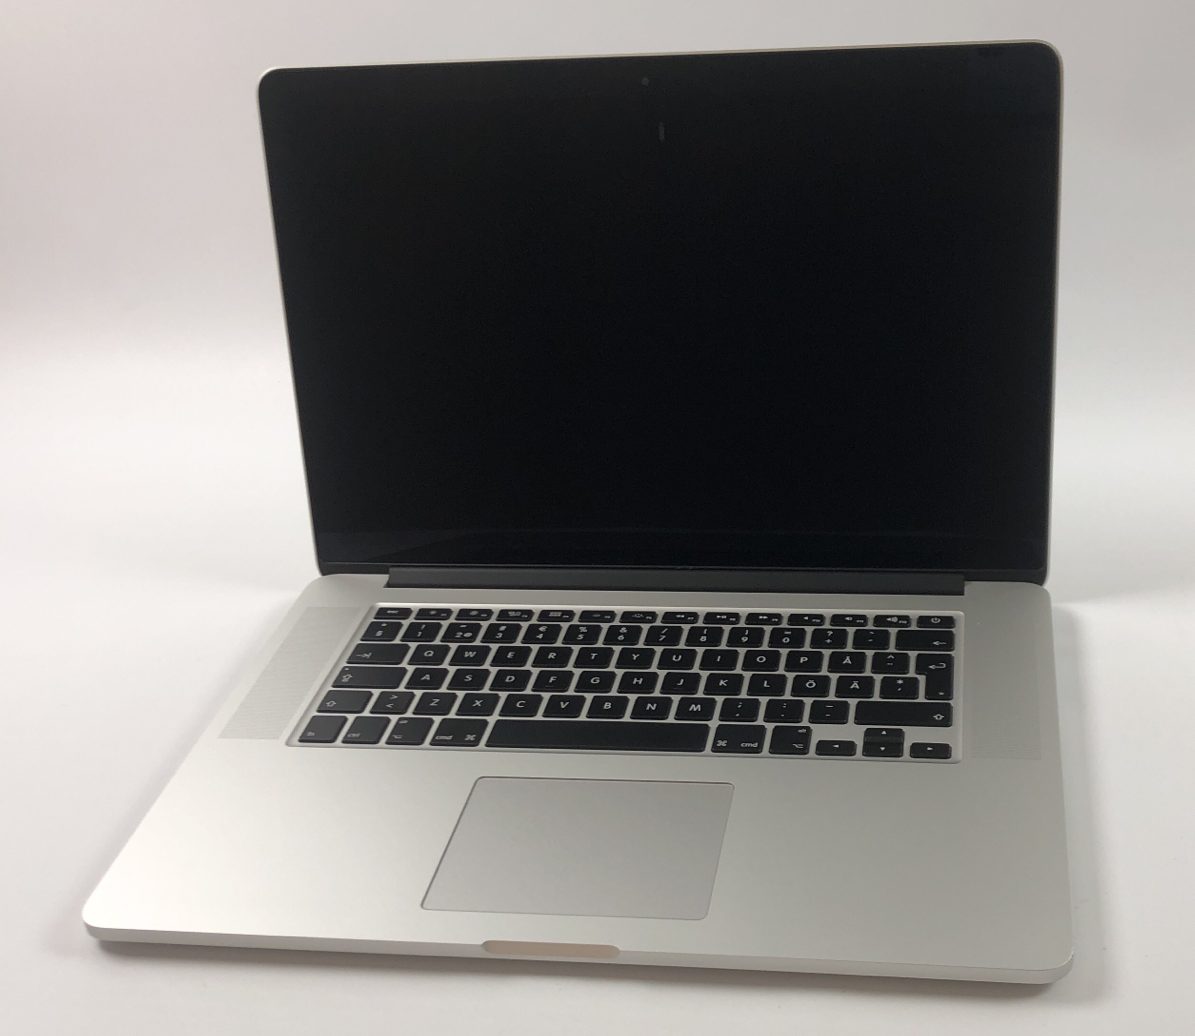 MacBook Pro Retina 15" Mid 2015 (Intel Quad-Core i7 2.2 GHz 16 GB RAM 256 GB SSD), Intel Quad-Core i7 2.2 GHz, 16 GB RAM, 256 GB SSD, imagen 1